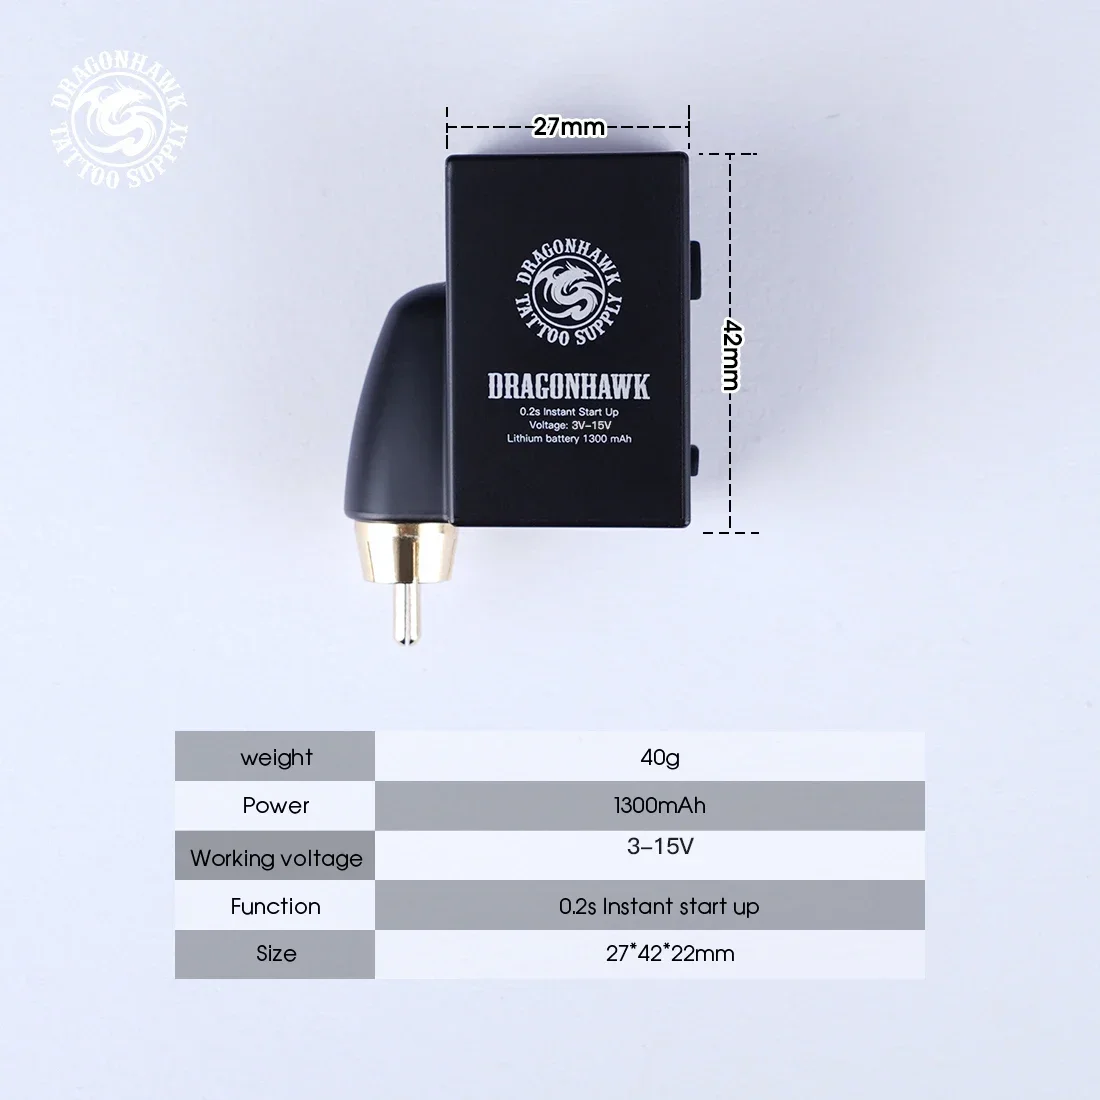 Dragonhawk B1 bezdrátový tetování baterie energie poskytnout lehoučké malý LCD displej obrazovka pro tetování pero stroj